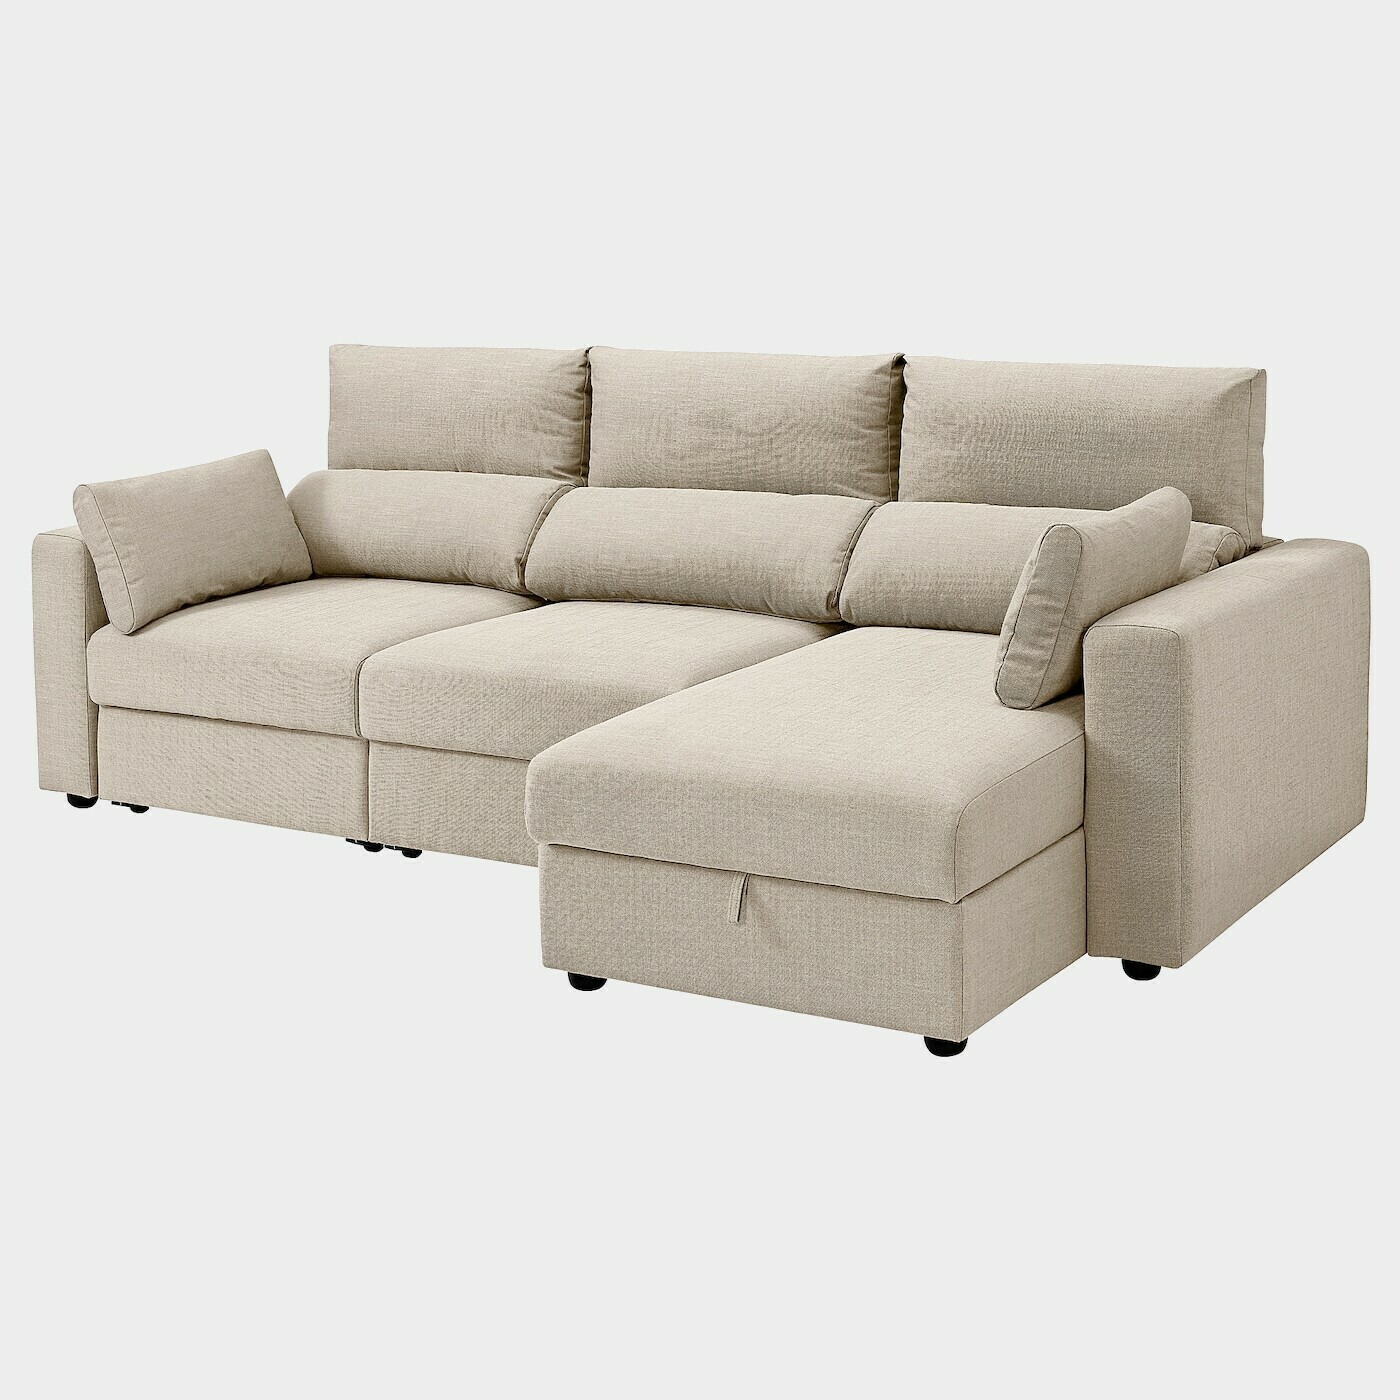 ESKILSTUNA 3er-Sofa  -  - Möbel Ideen für dein Zuhause von Home Trends. Möbel Trends von Social Media Influencer für dein Skandi Zuhause.